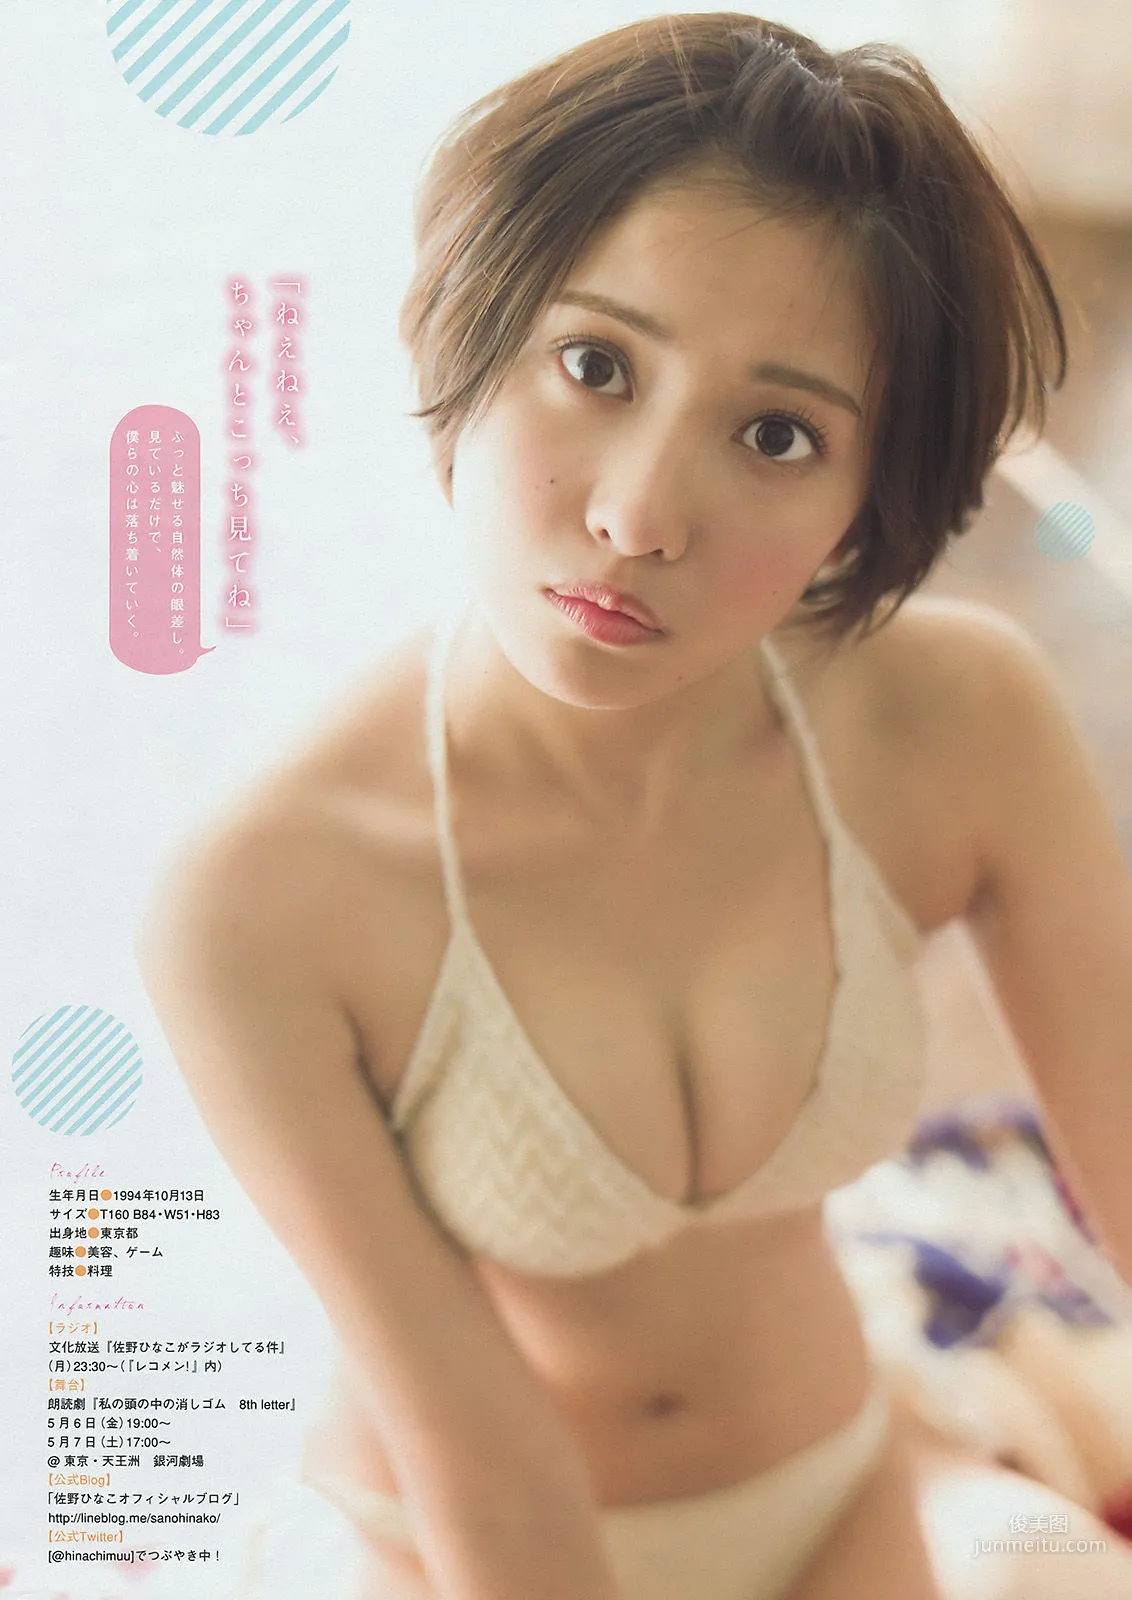 [Young Magazine] 朝長美桜 佐野ひなこ 2016年No.17 写真杂志12